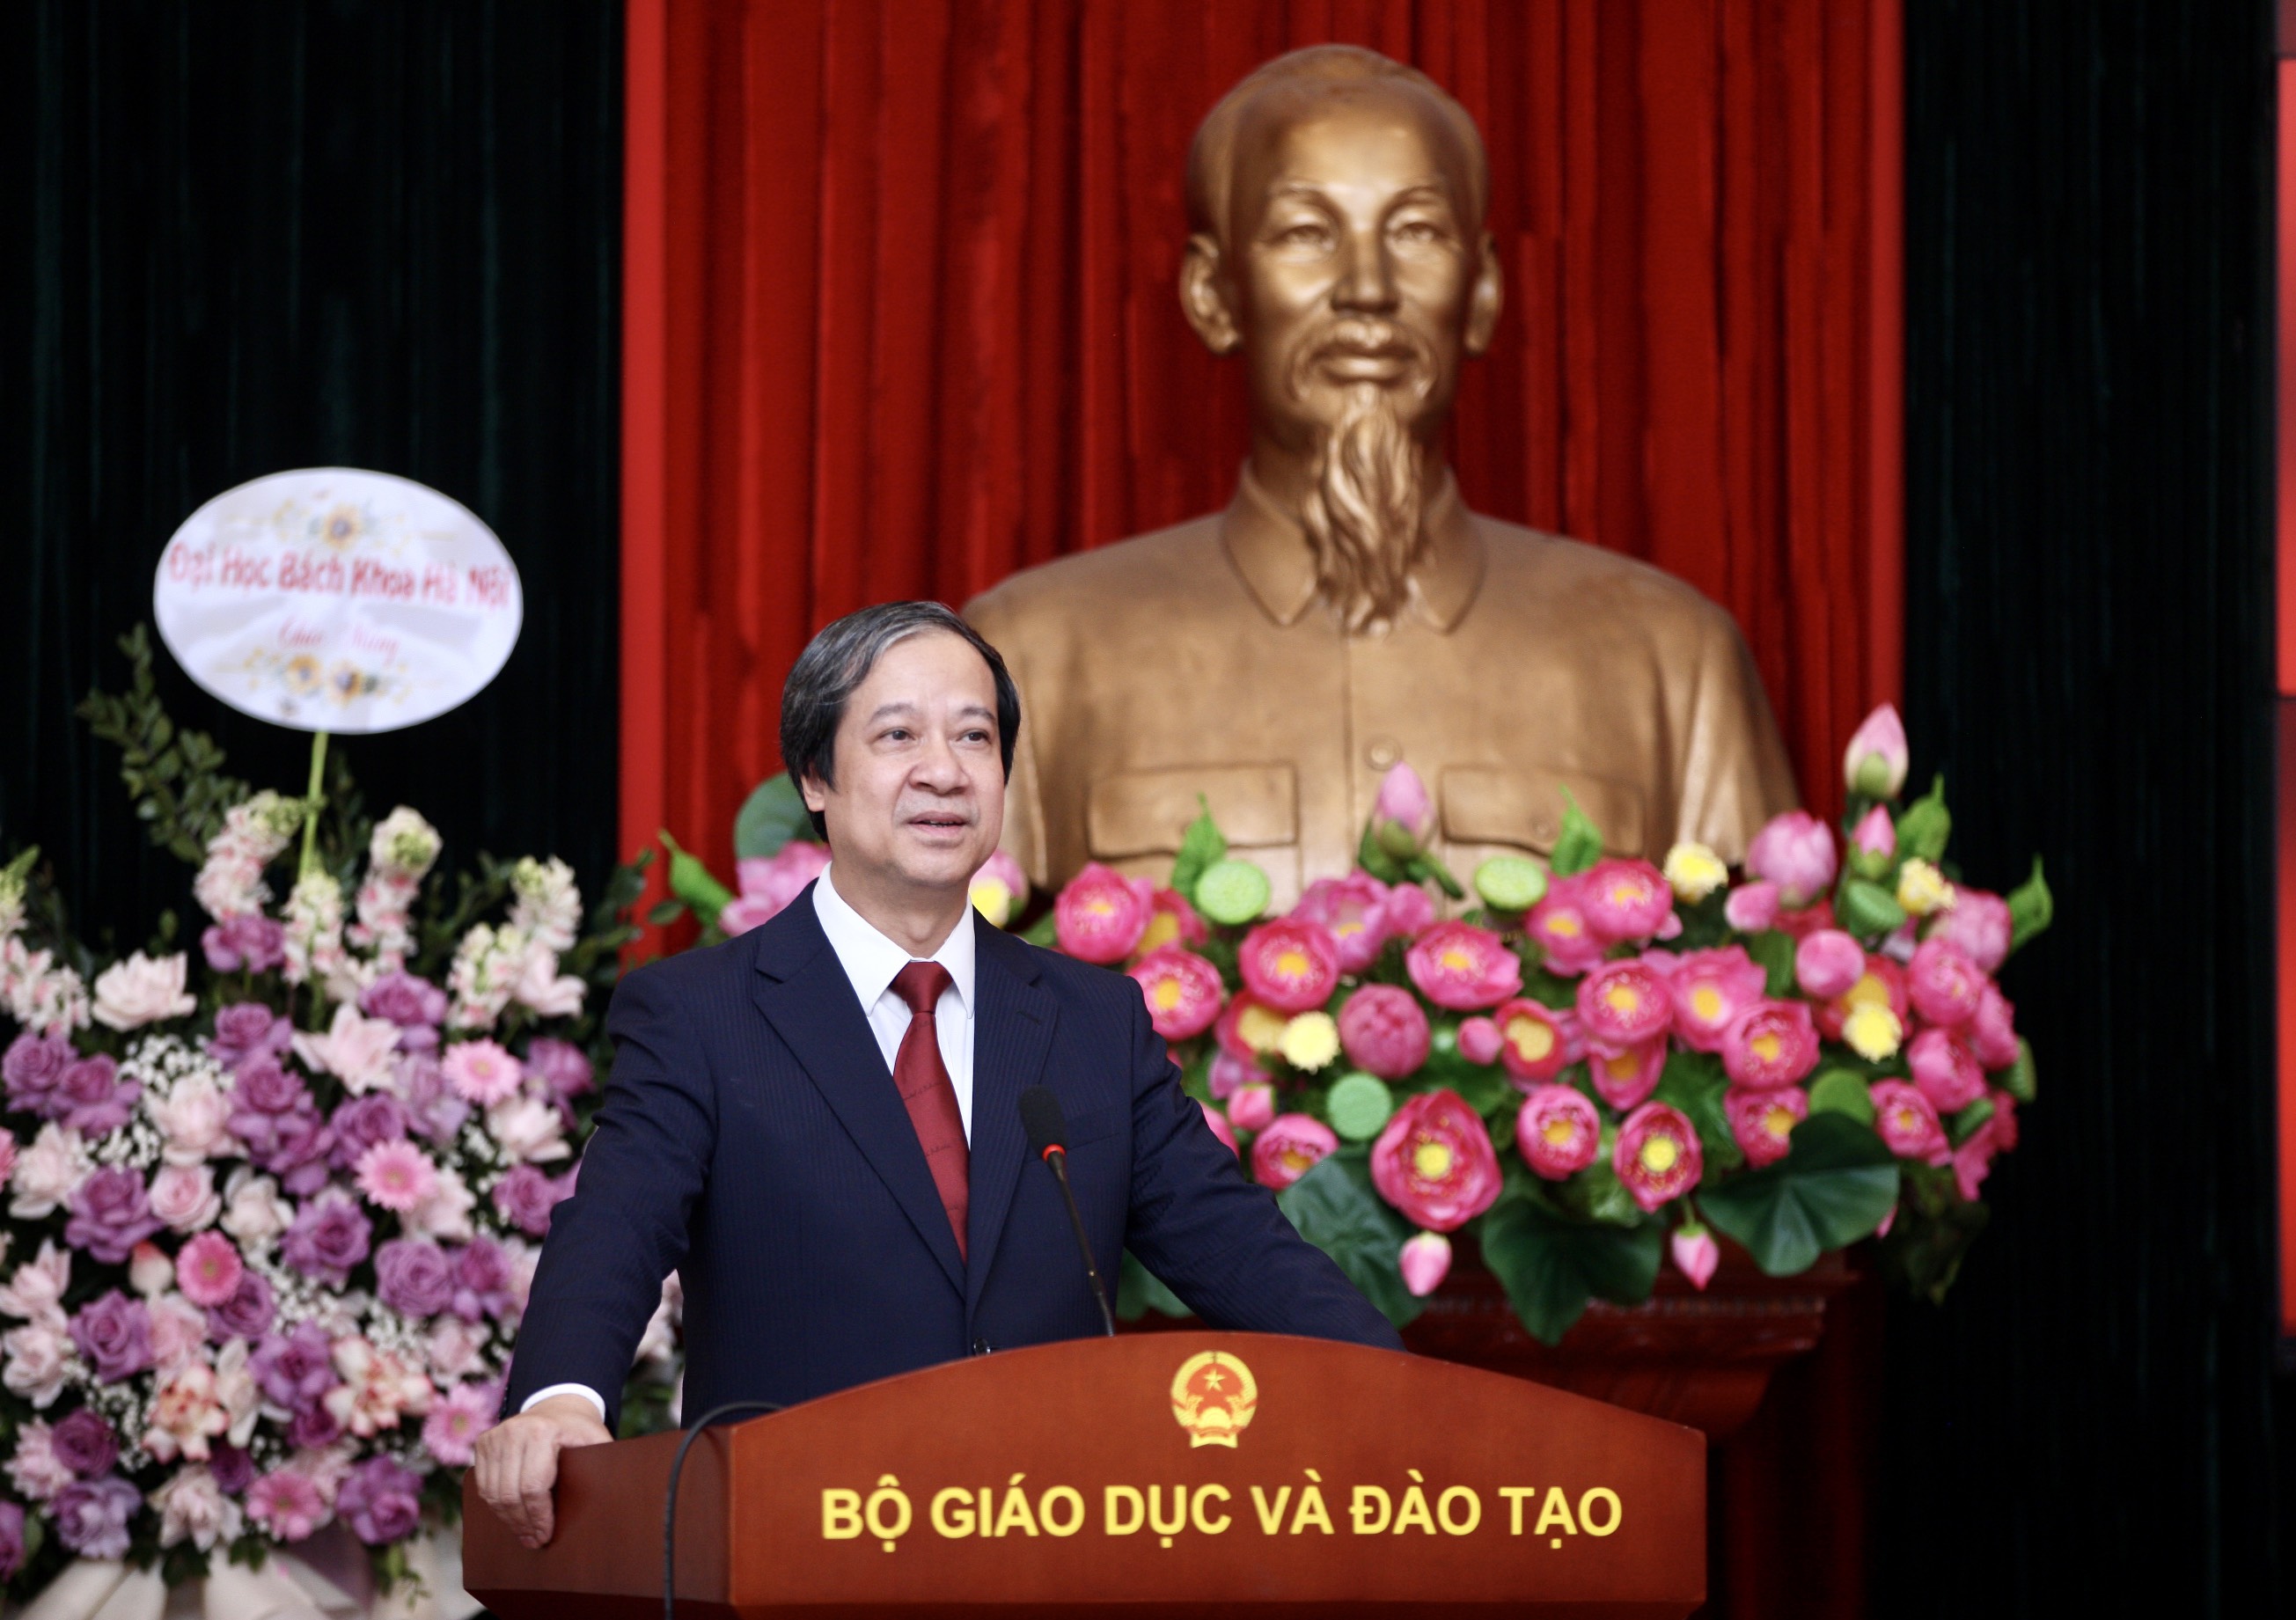 Bộ trưởng Nguyễn Kim Sơn phát biểu chúc mừng tân Thứ trưởng Nguyễn Thị Kim Chi.